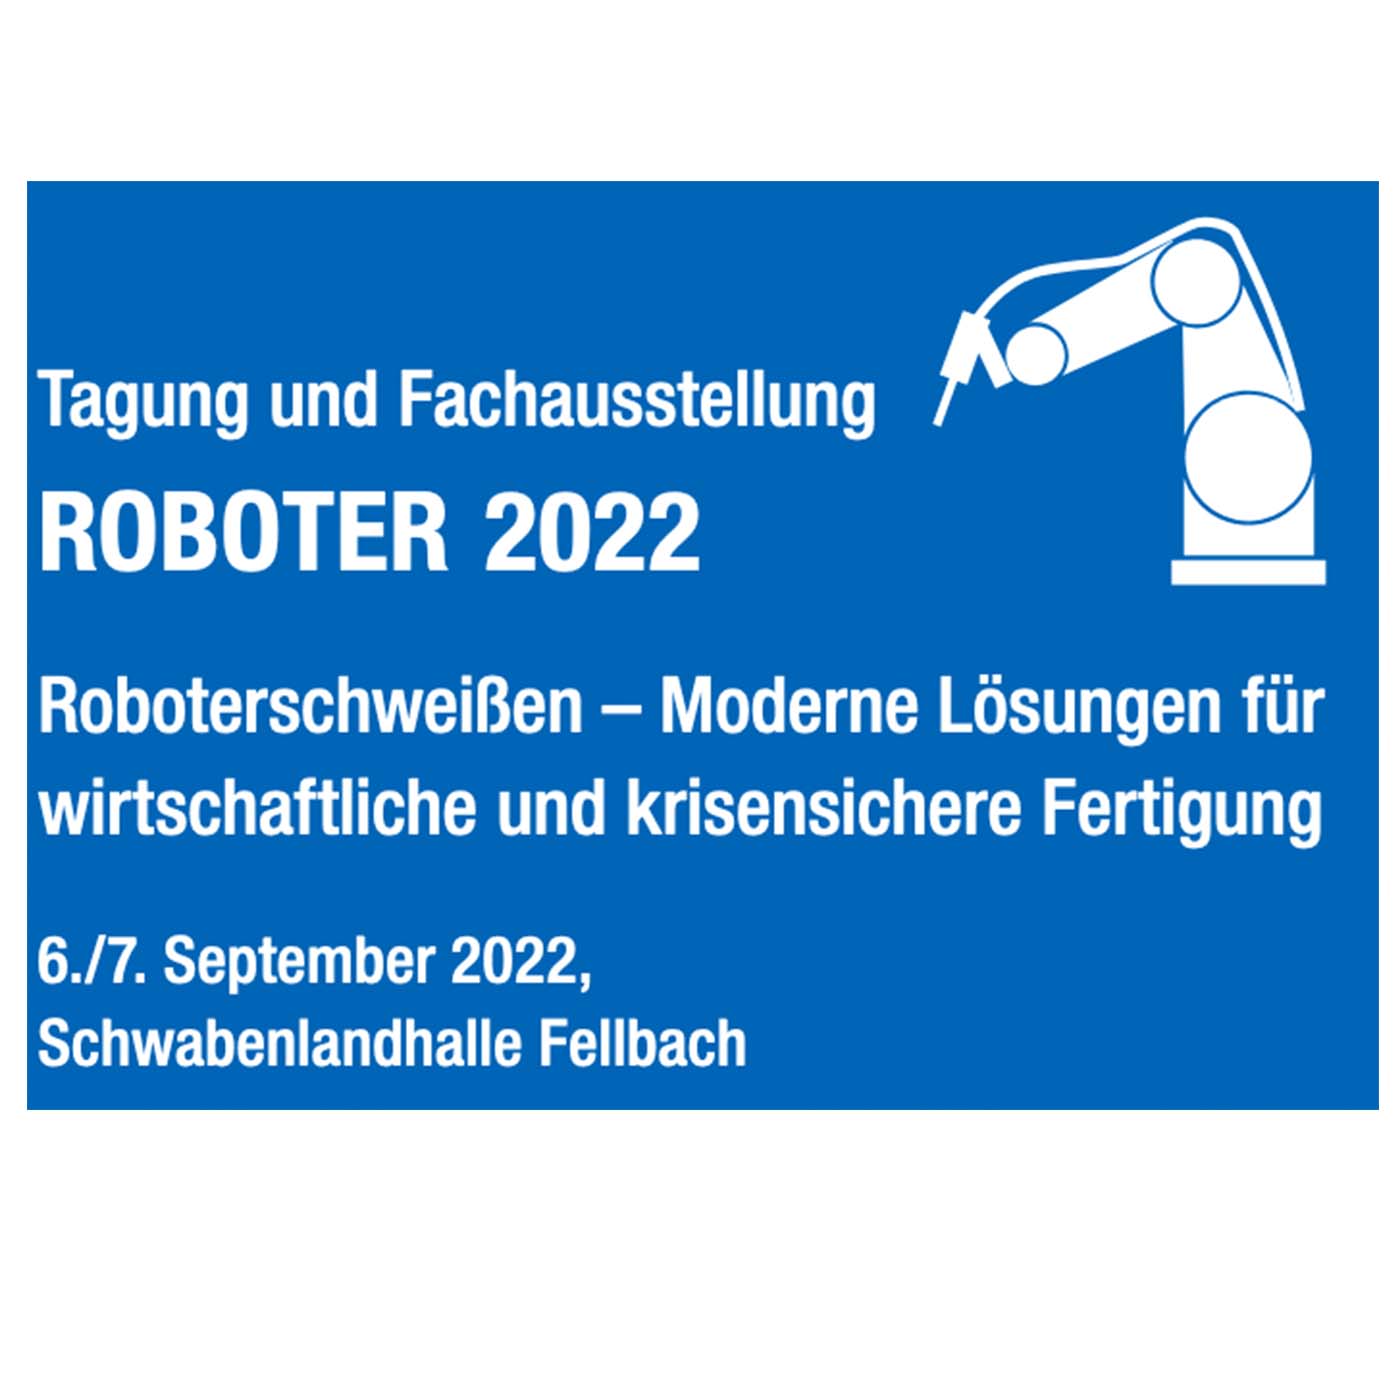 Roboter 2022 schweissen